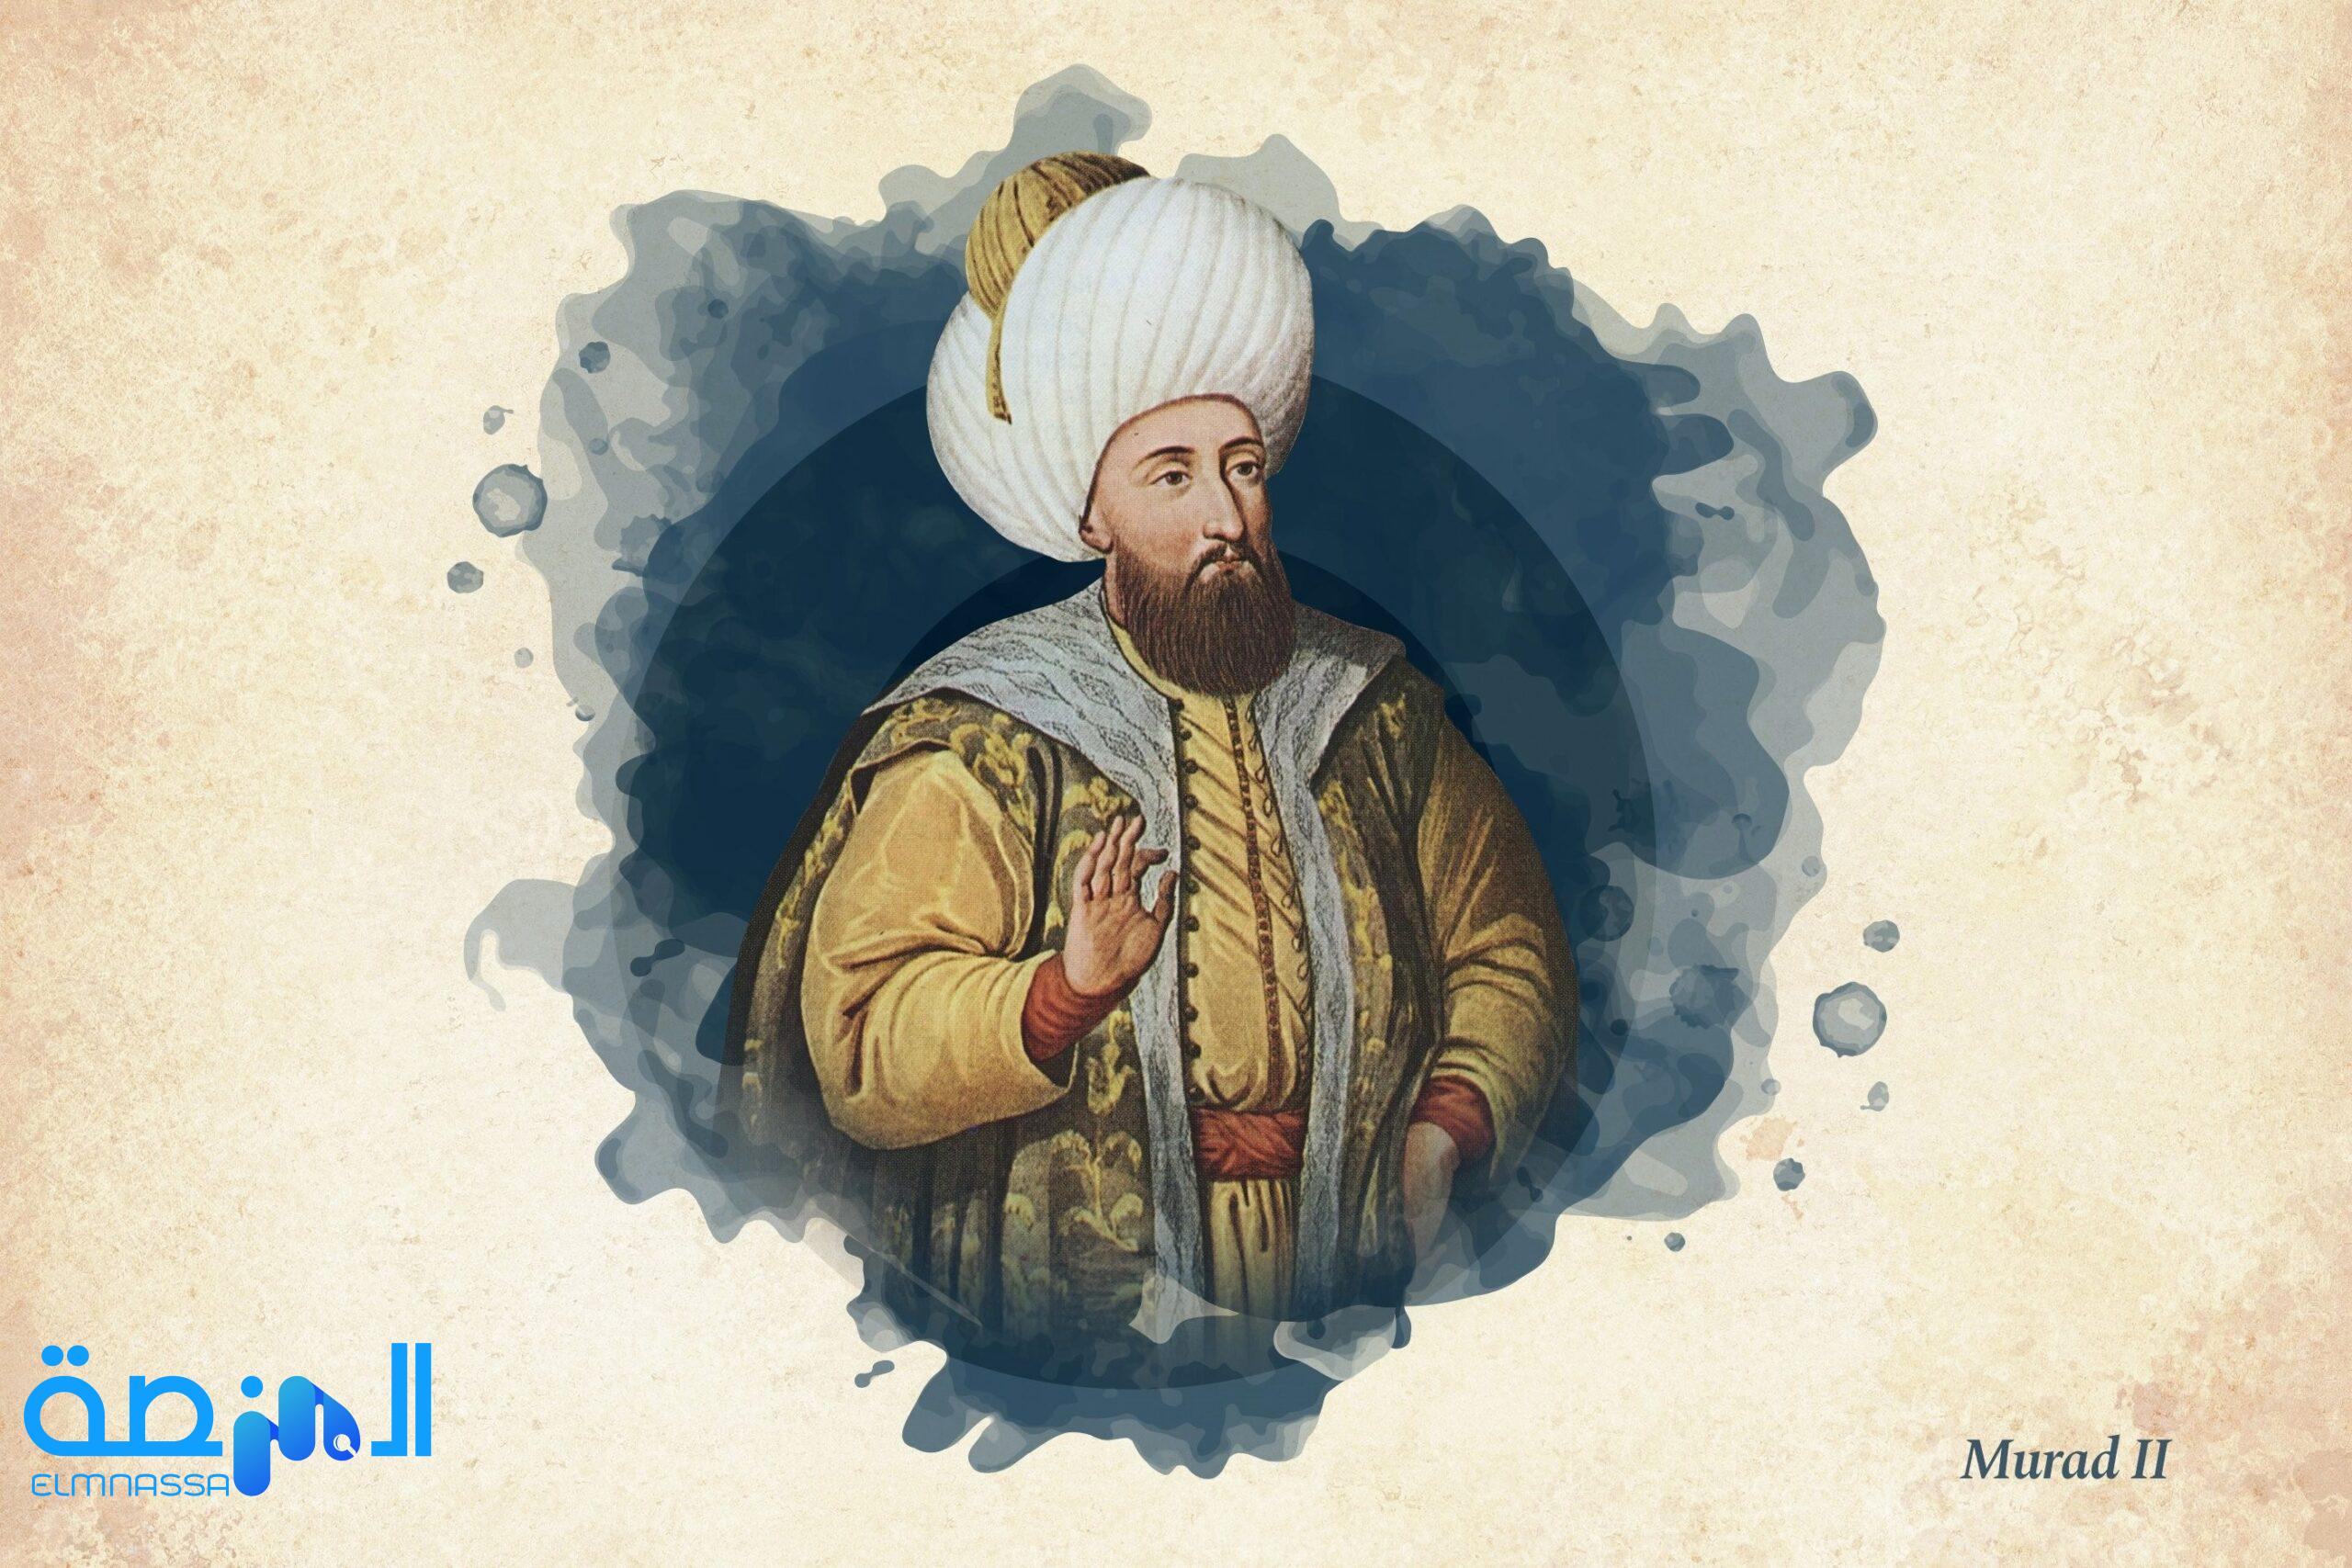 السلطان مراد الثاني الذي أعاد توحيد العثمانيين